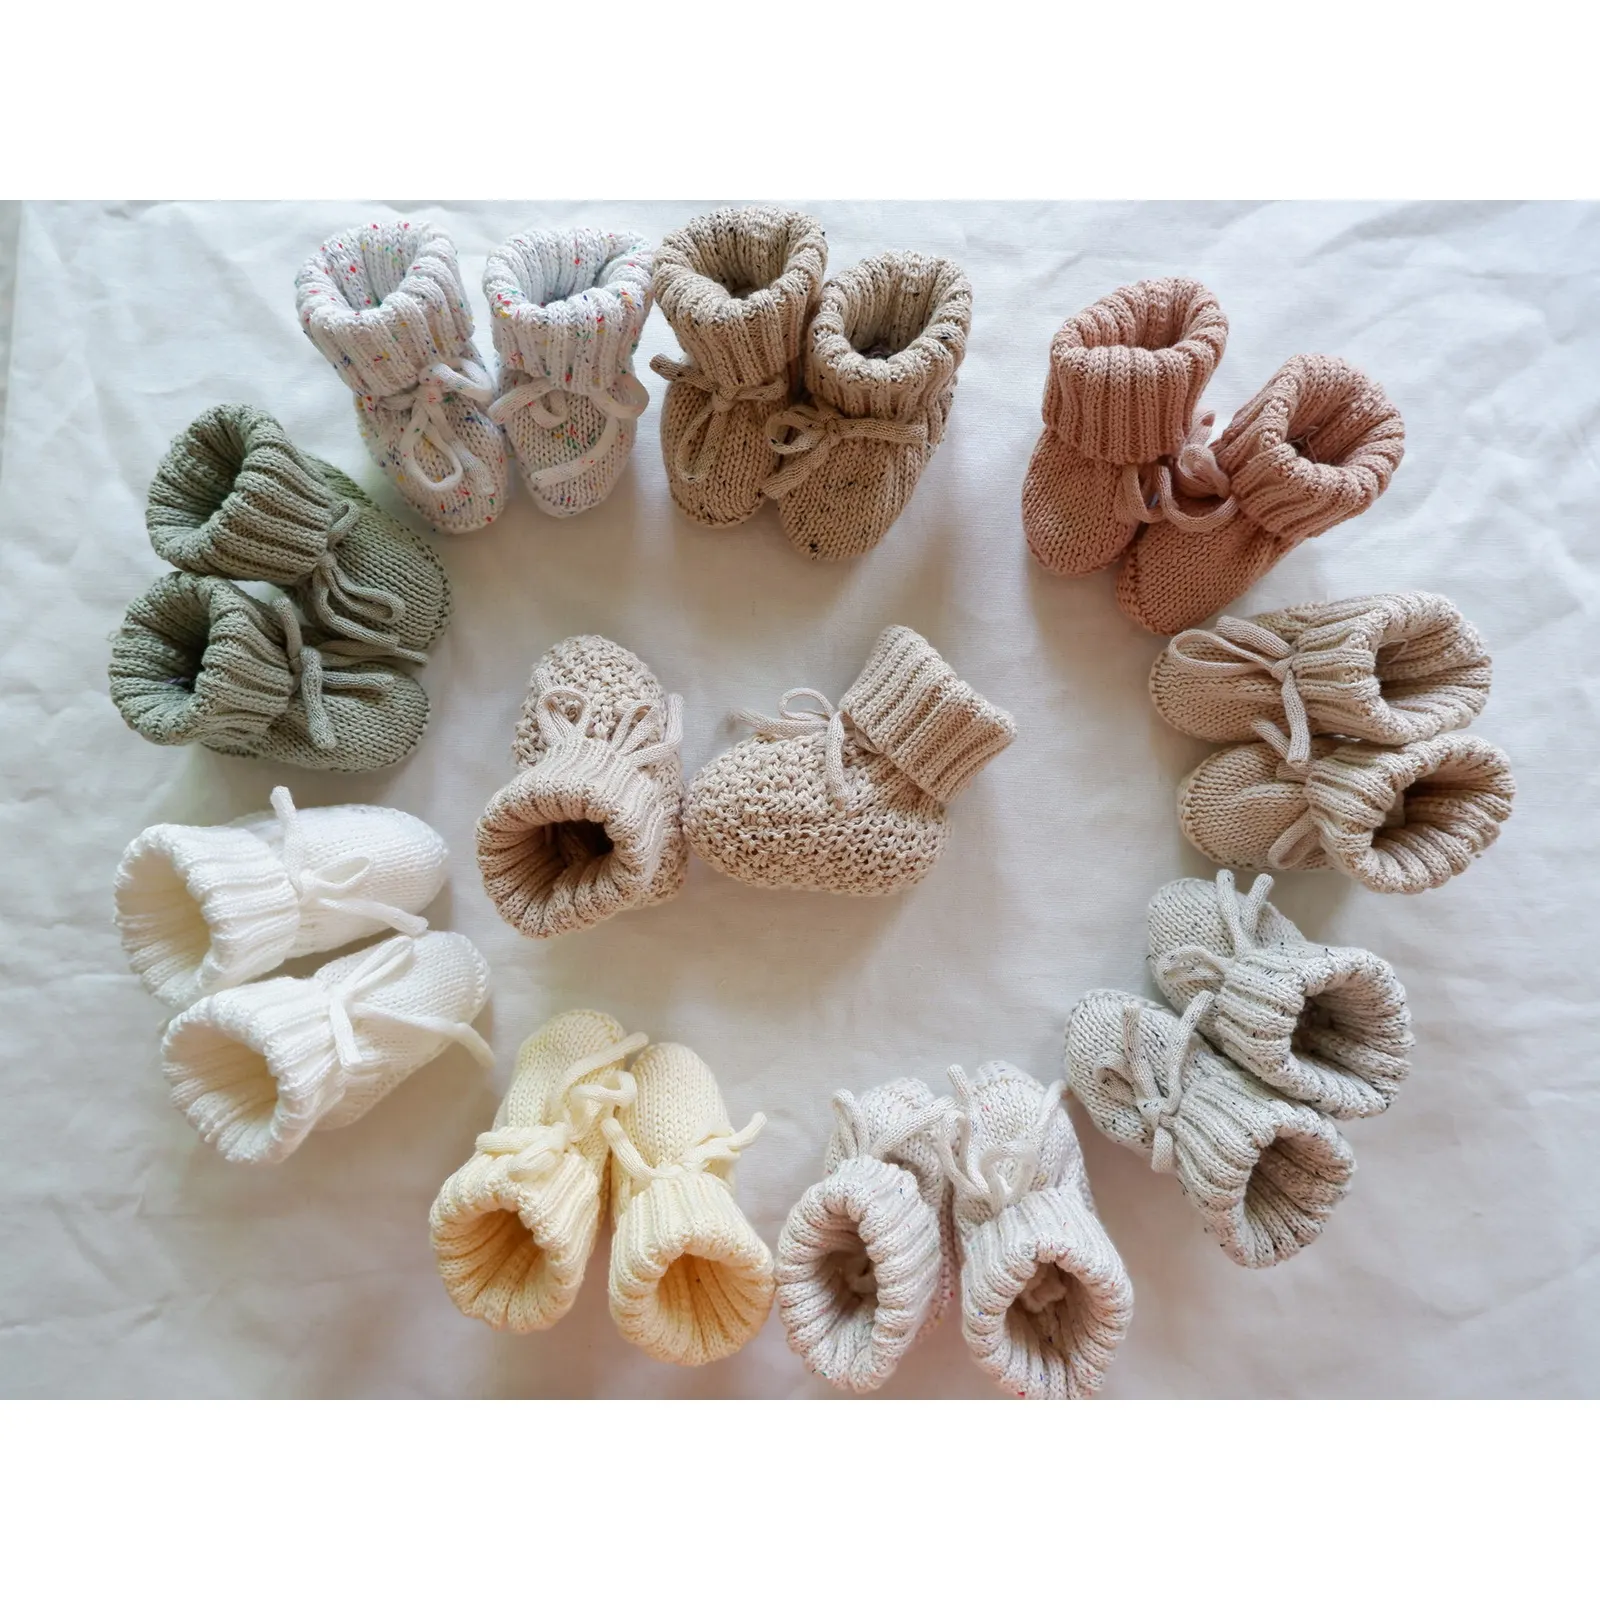 새로 태어난 아기 바닥 양말 면 손으로 만든 크로 셰 뜨개질 니트 베이비 부티 유기농면 대나무 및 양모 직물을 사용자 정의 할 수 있습니다